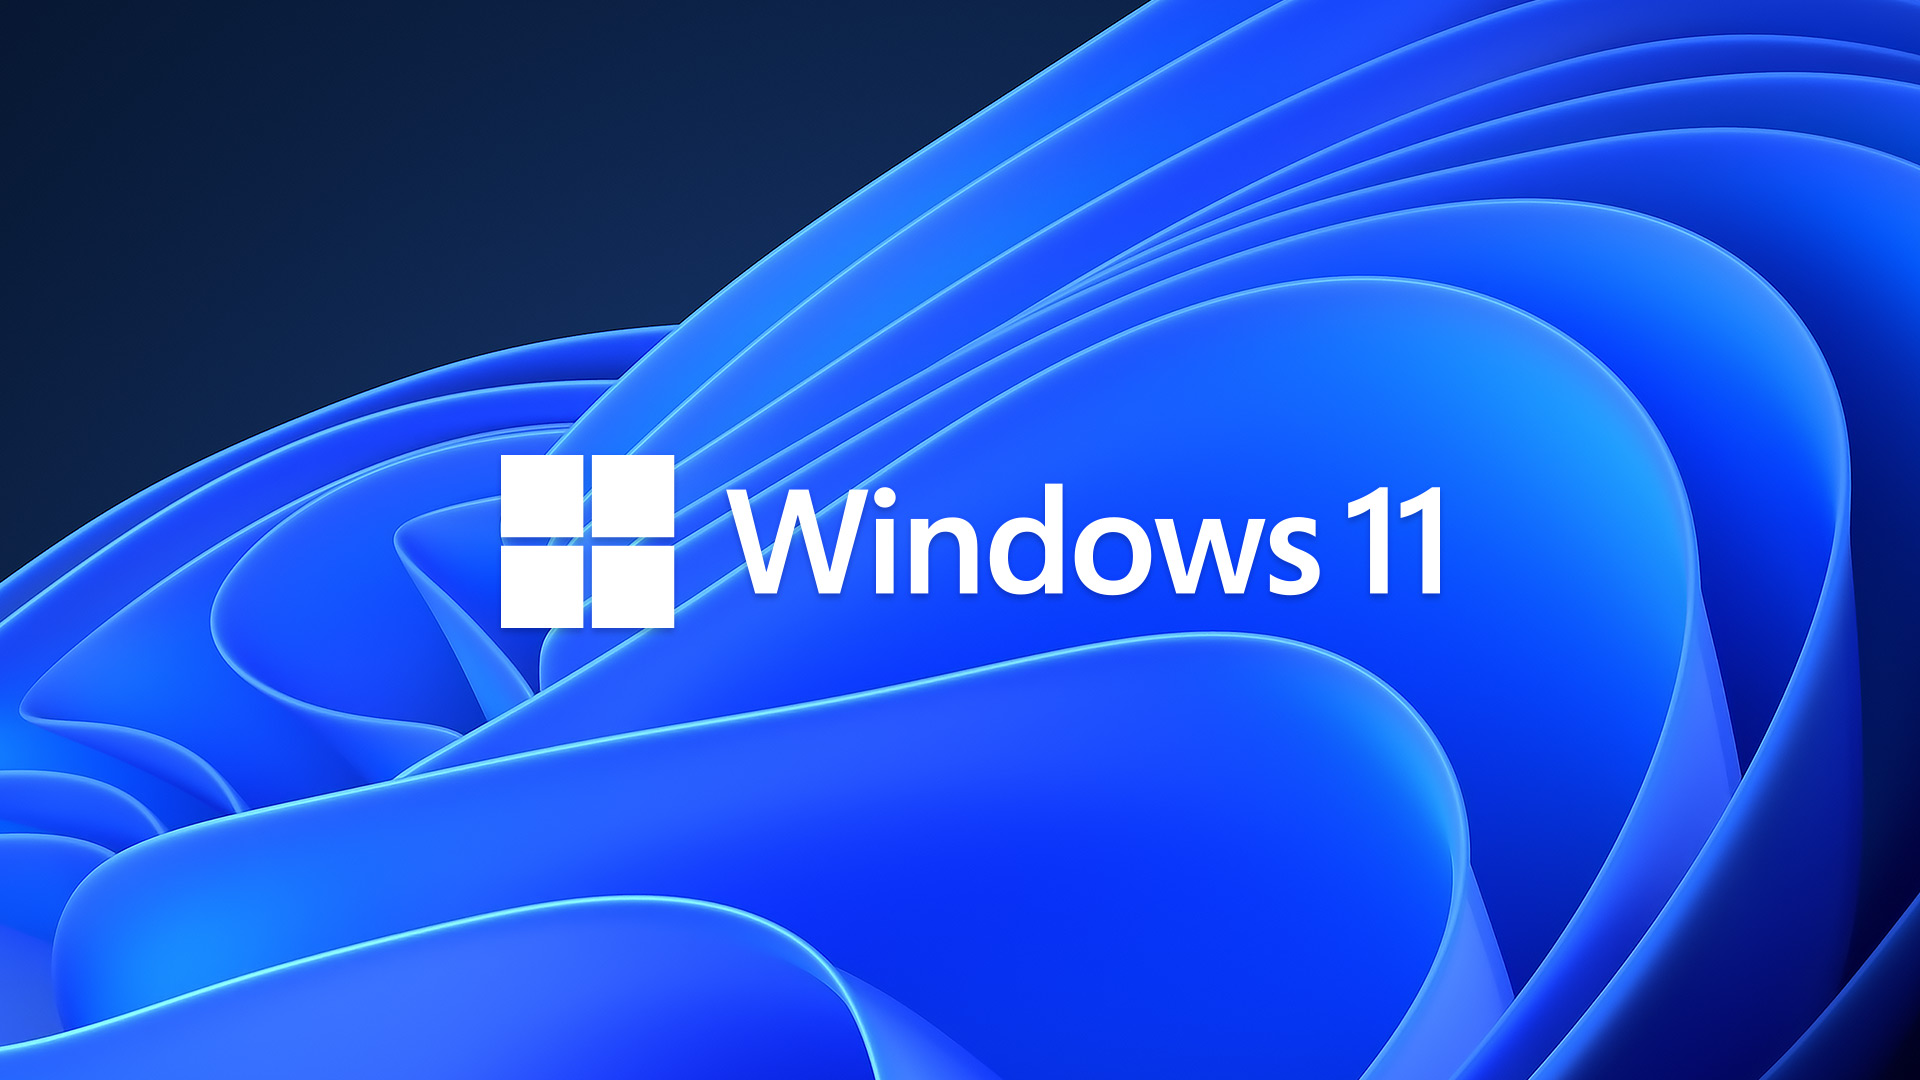 Identyfikacja wizualna Windows 11 – jak powstała?